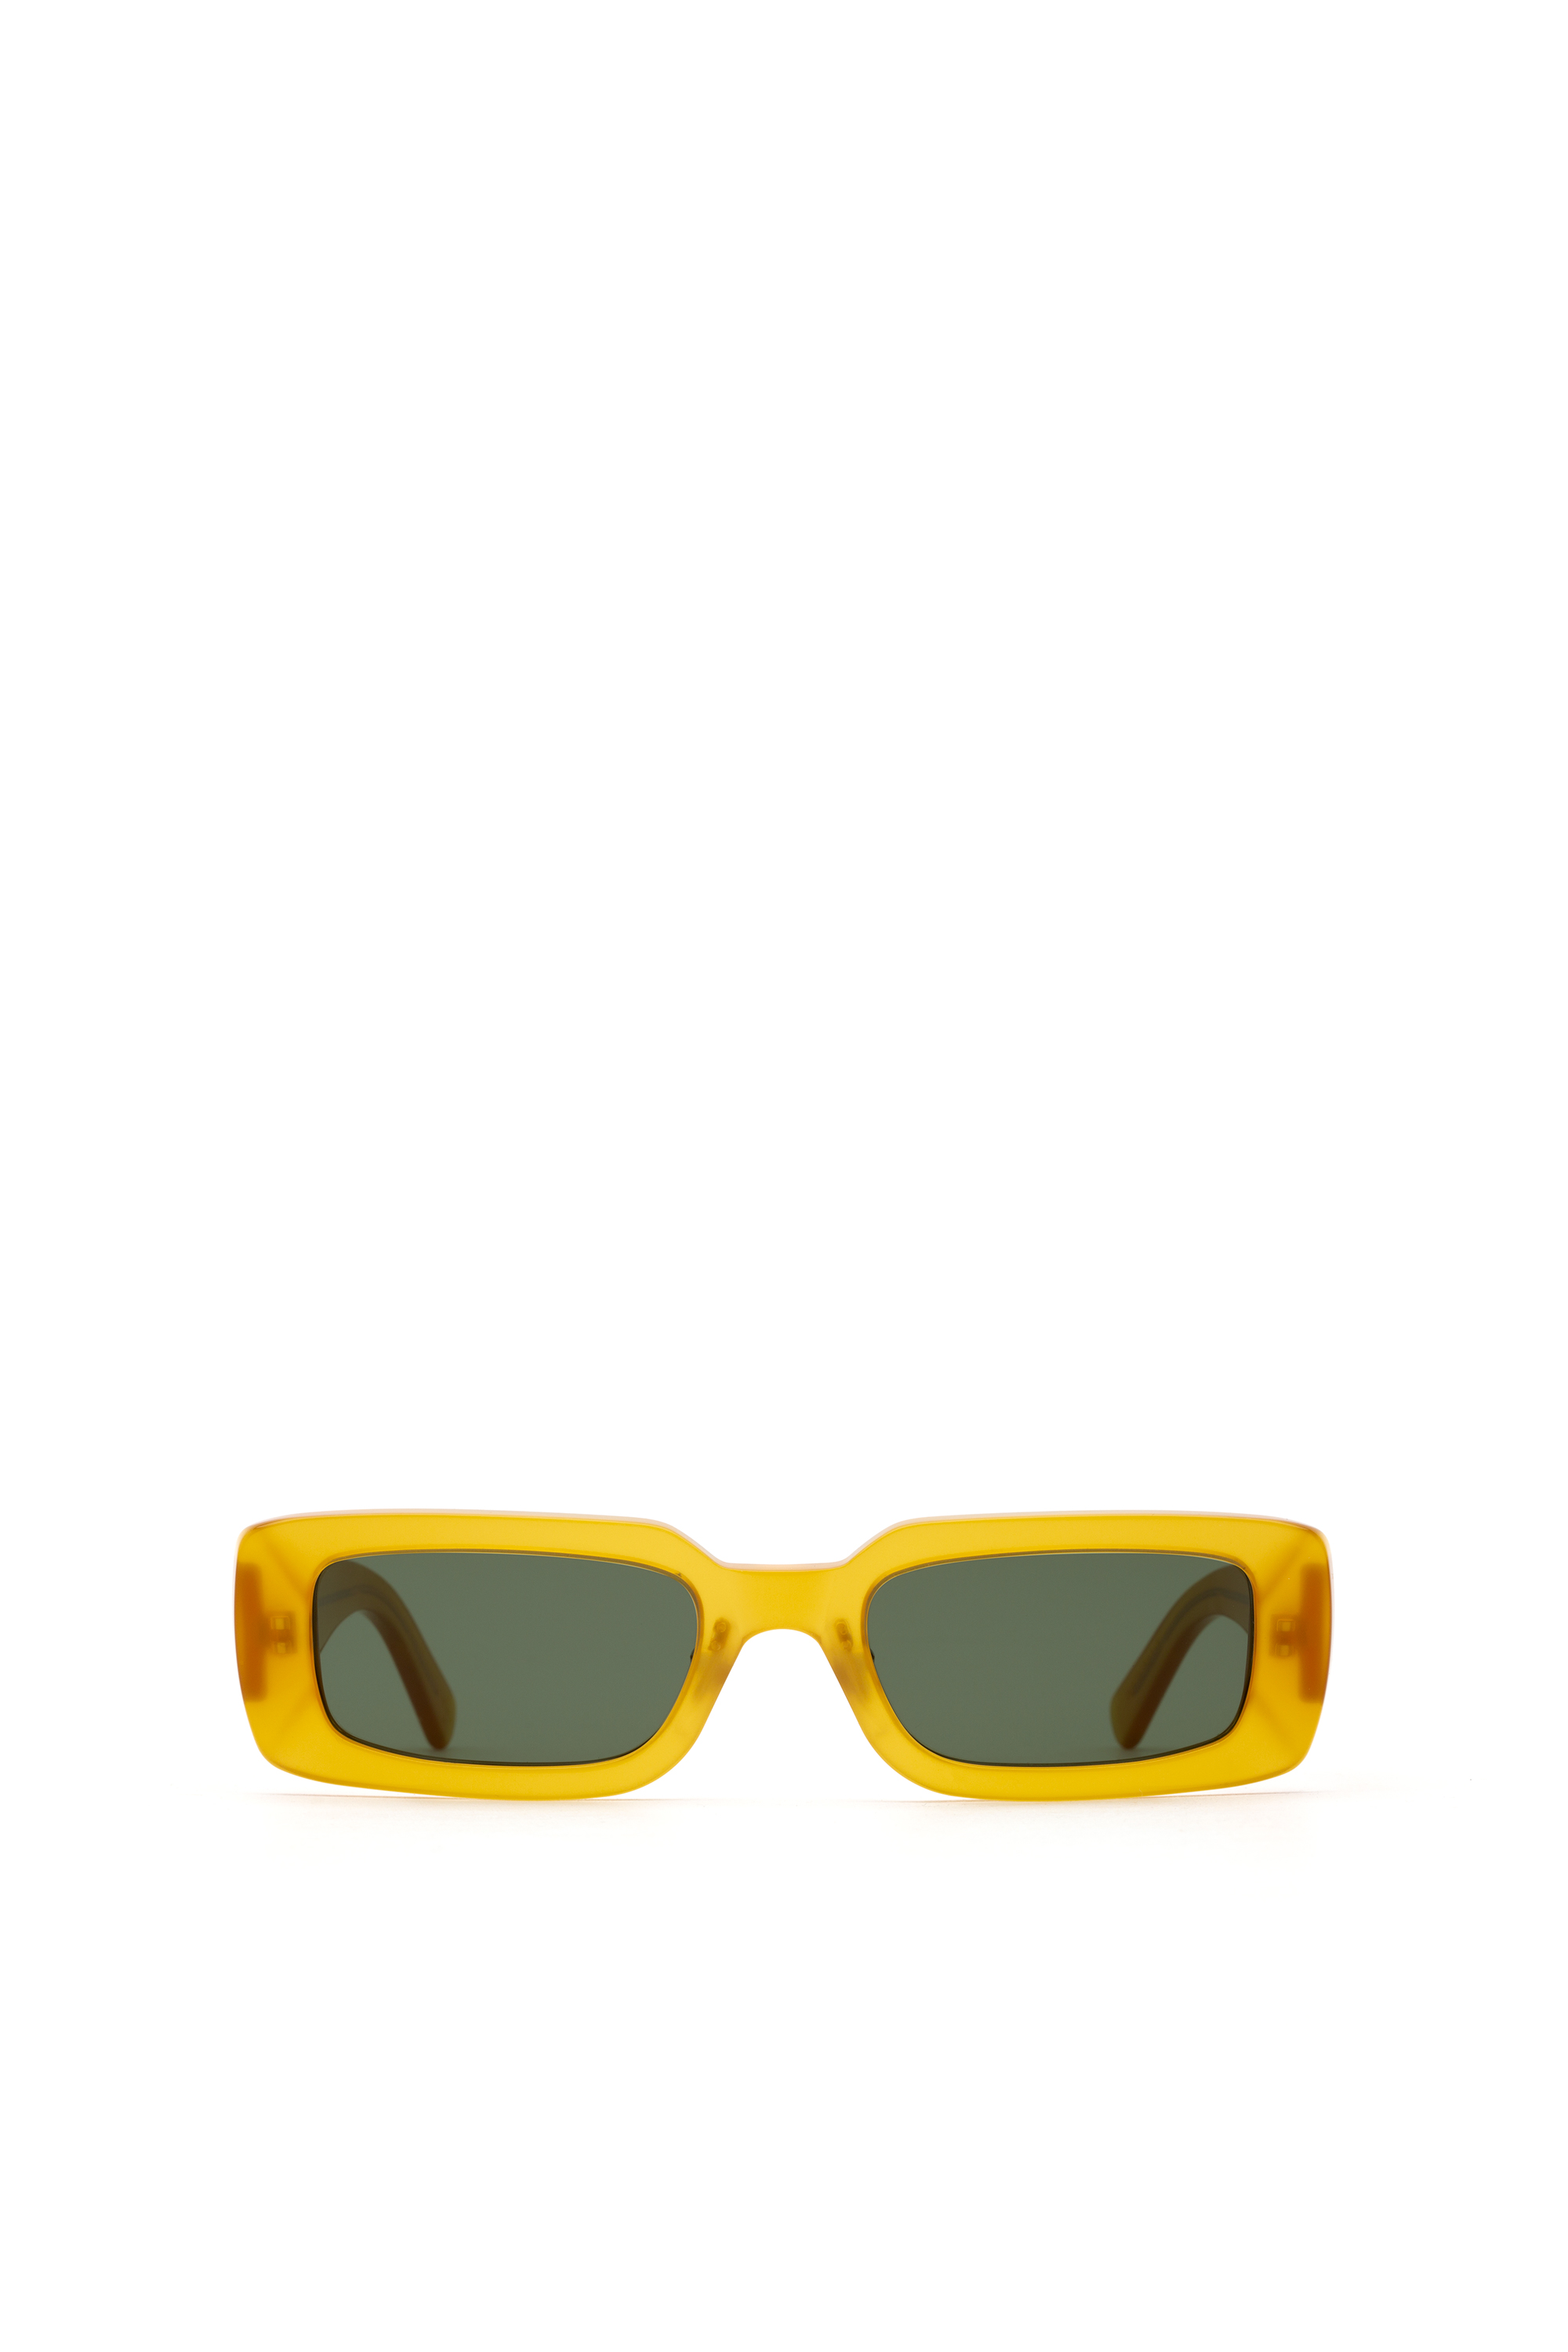 Diesel leesbril van 0,25 tot Accessoires Zonnebrillen & Eyewear Leesbrillen 3,50 glanzend zwarte herenlezers Dl5336 001 